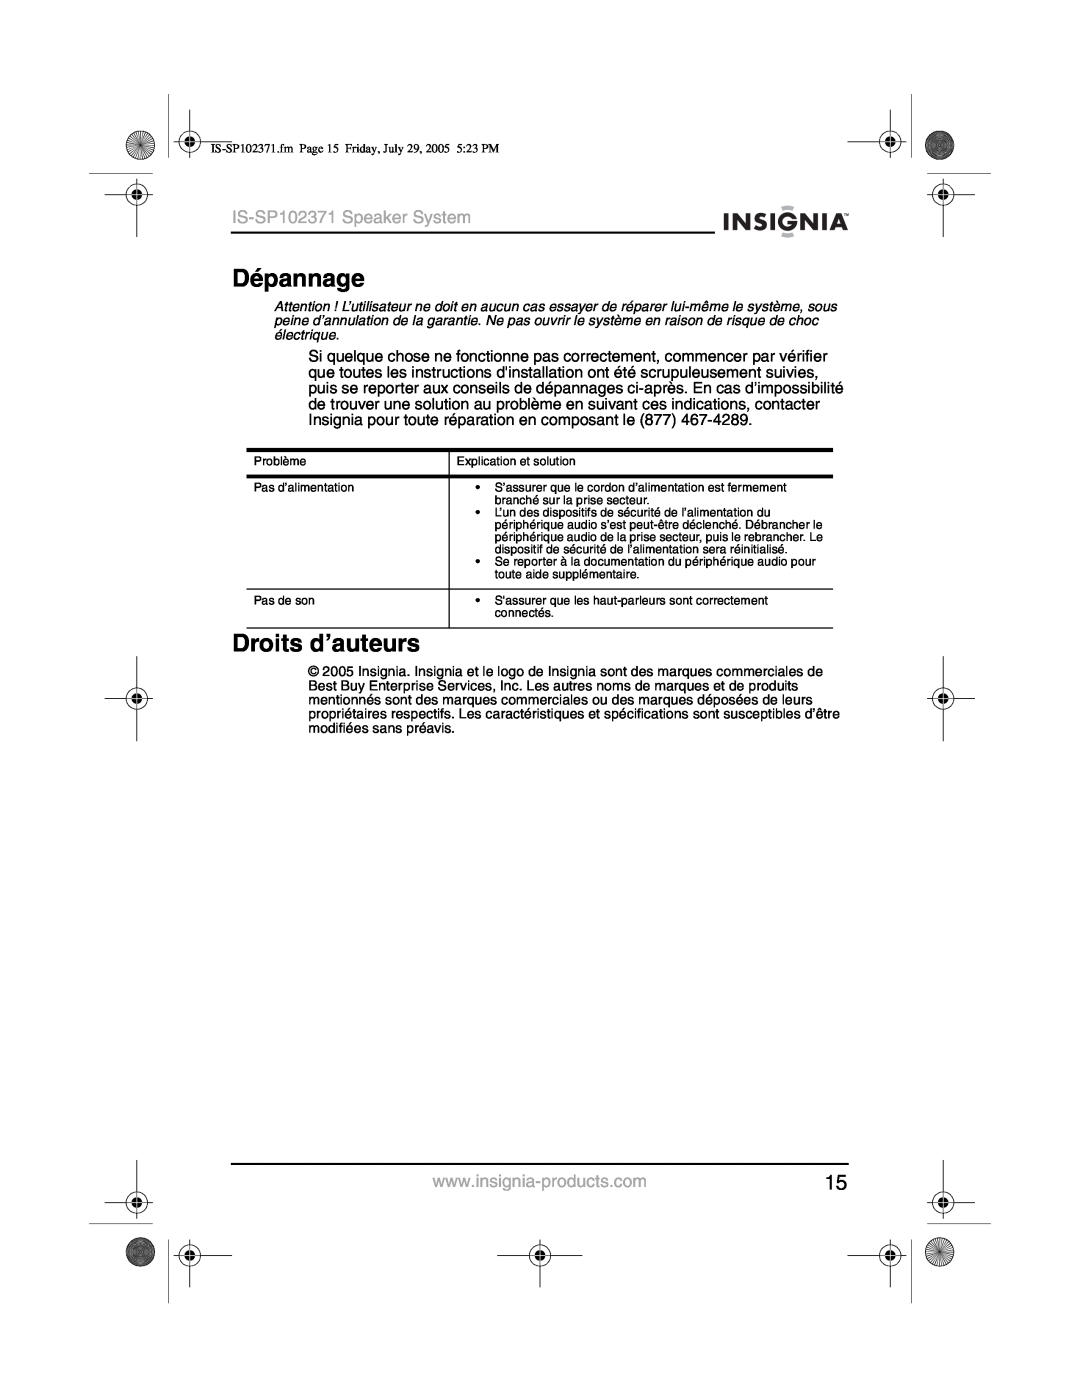 Insignia manual Dépannage, Droits d’auteurs, IS-SP102371Speaker System 